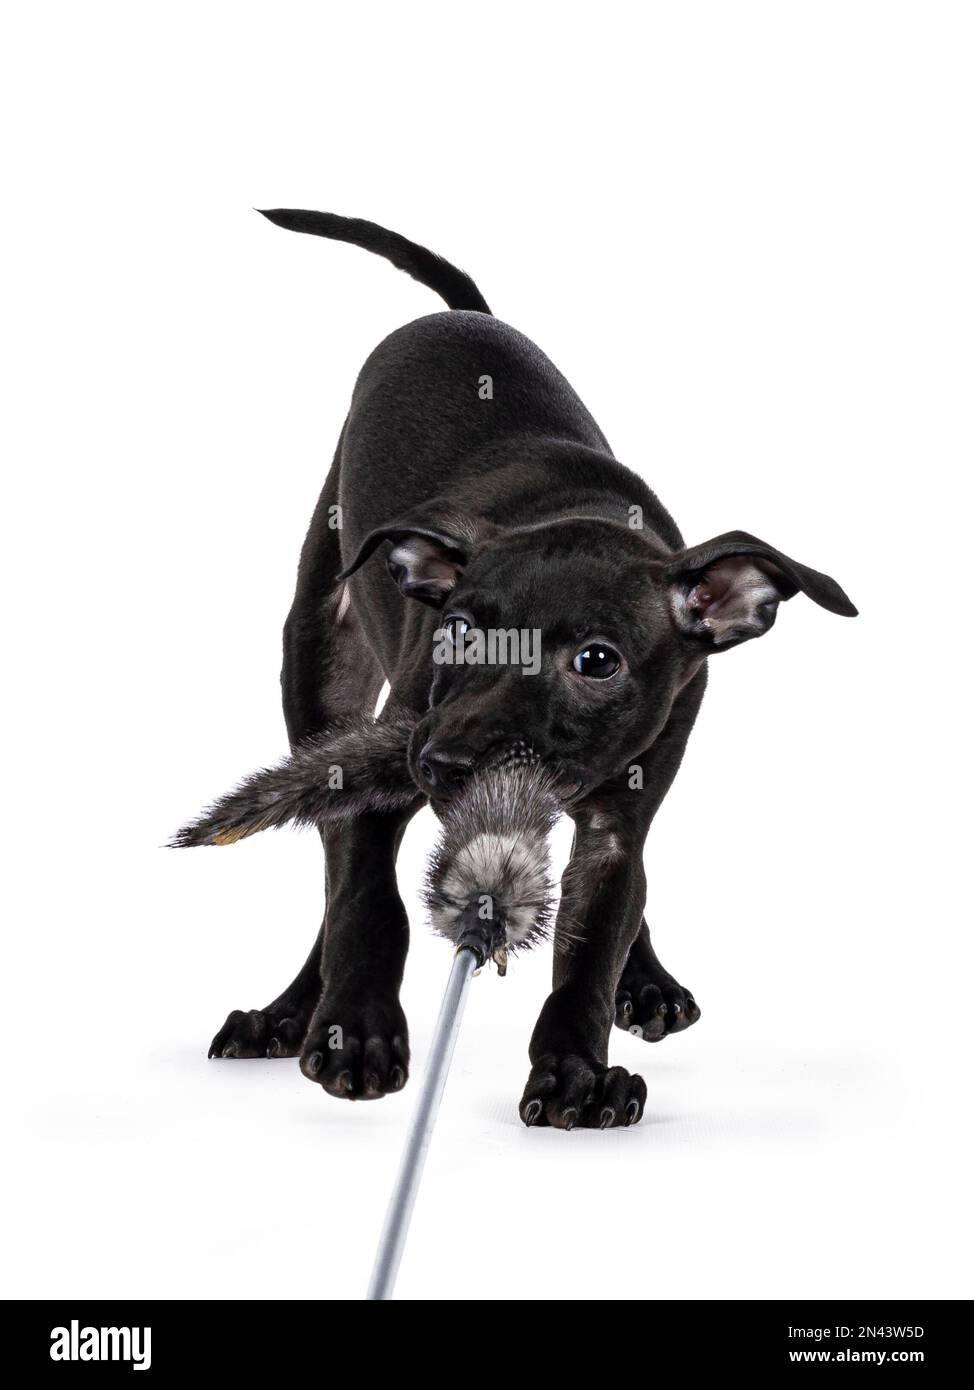 Mignon mâle italien Greyhound aka italien Sighthound pup, jouant avec le jouet de fourrure tout en regardant directement à l'appareil photo. Isolé sur un fond blanc. Banque D'Images